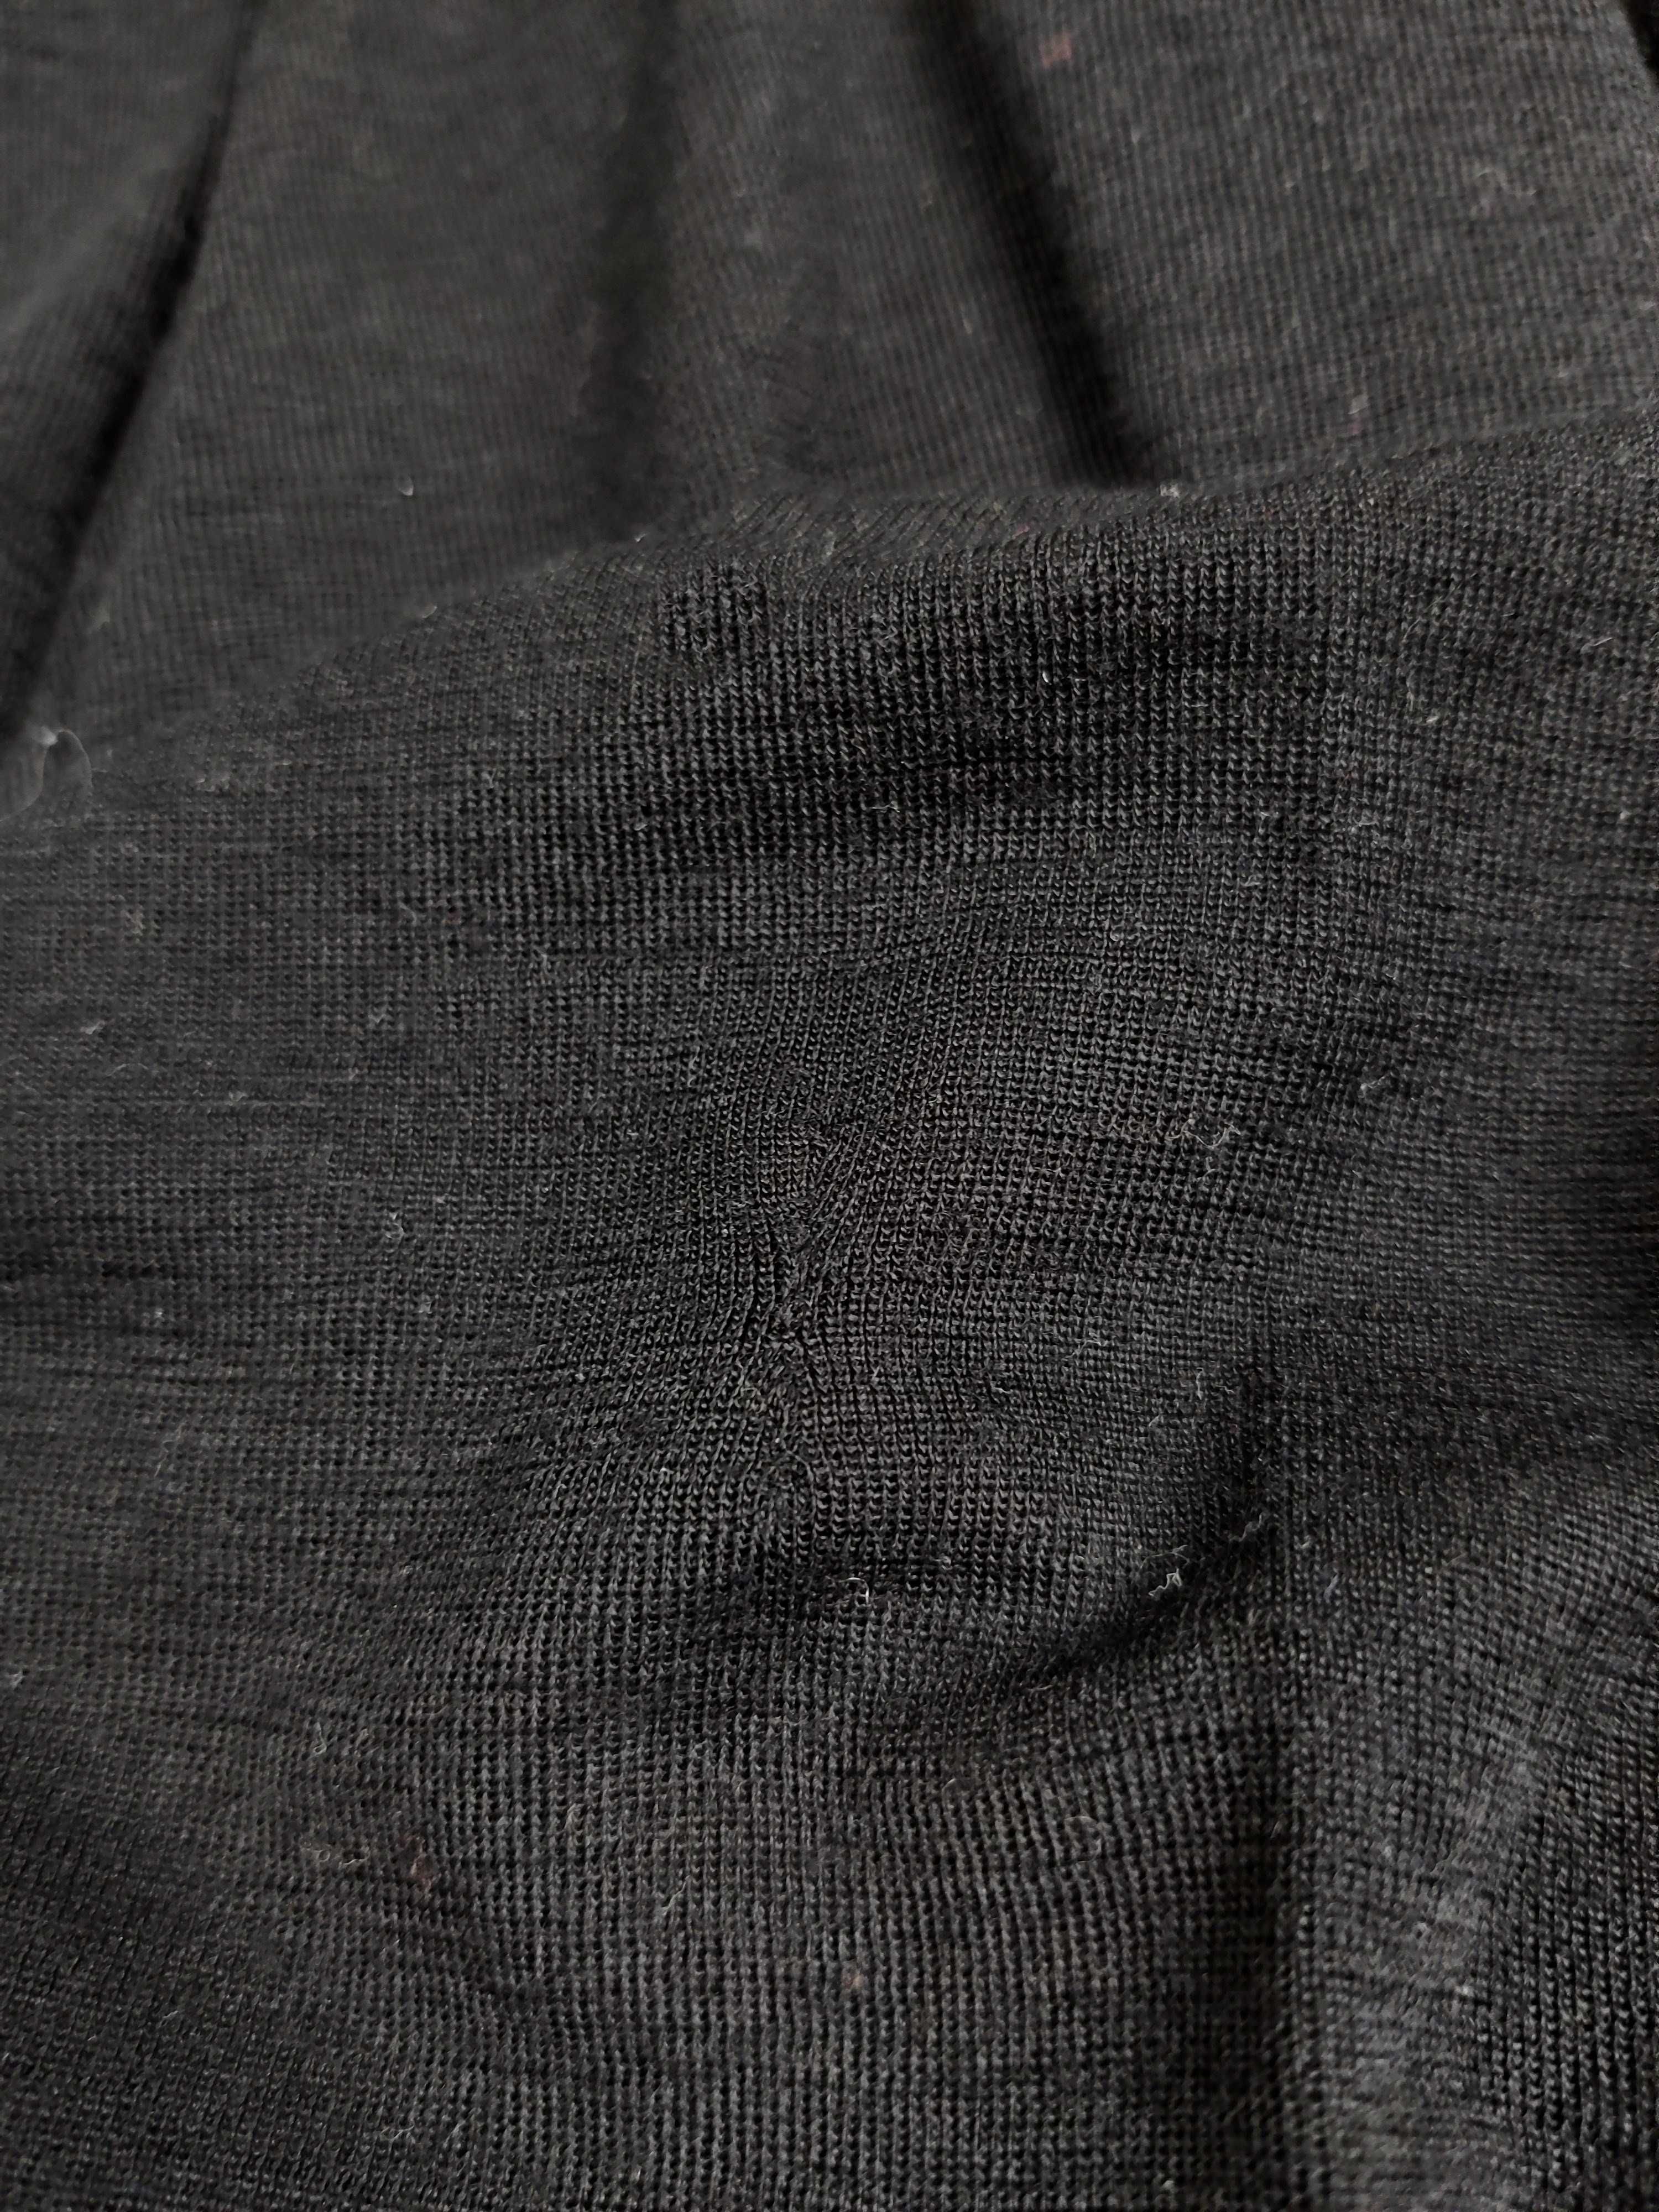 Janus czarna bluzka z wzorkiem merino jedwab 150 cm